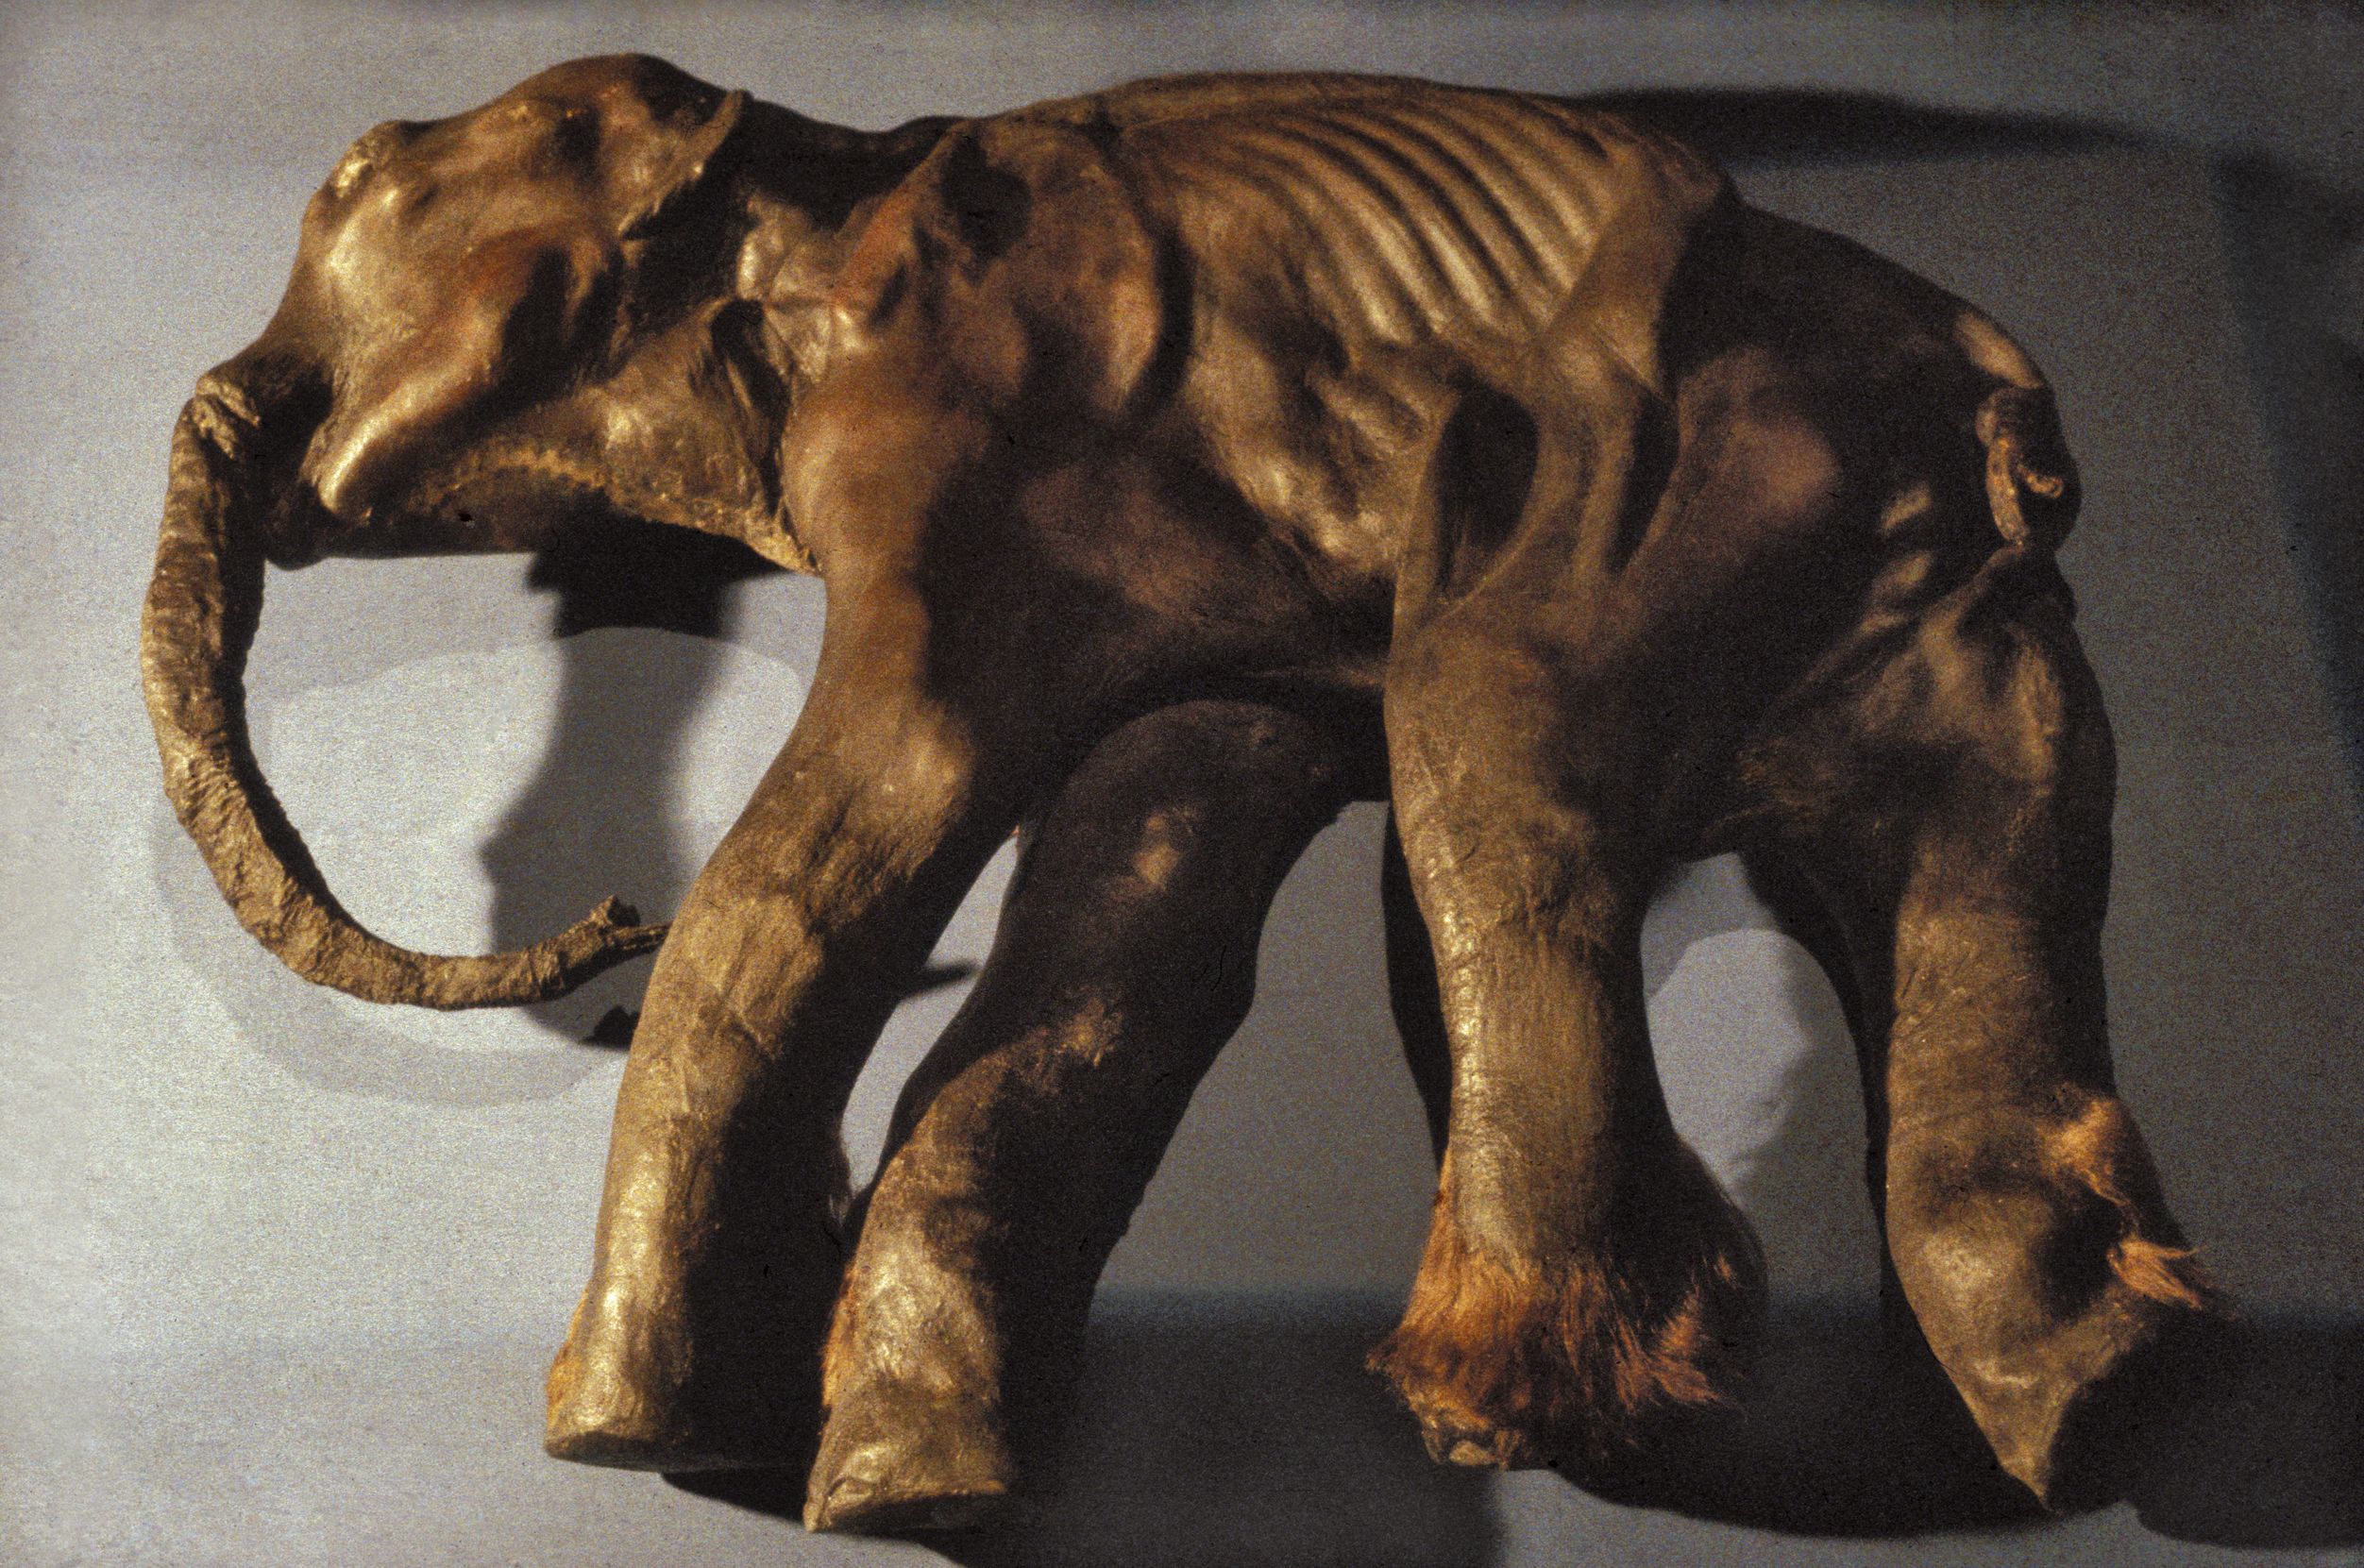 Ein Replikat der Mumie eines Mammut-Babys liegt auf dem Boden, der Rüssel schaut nach links. Die Oberfläche sieht ledrig aus, man sieht ein paar Rippen-Abdrücke und die Farbe ist braun.